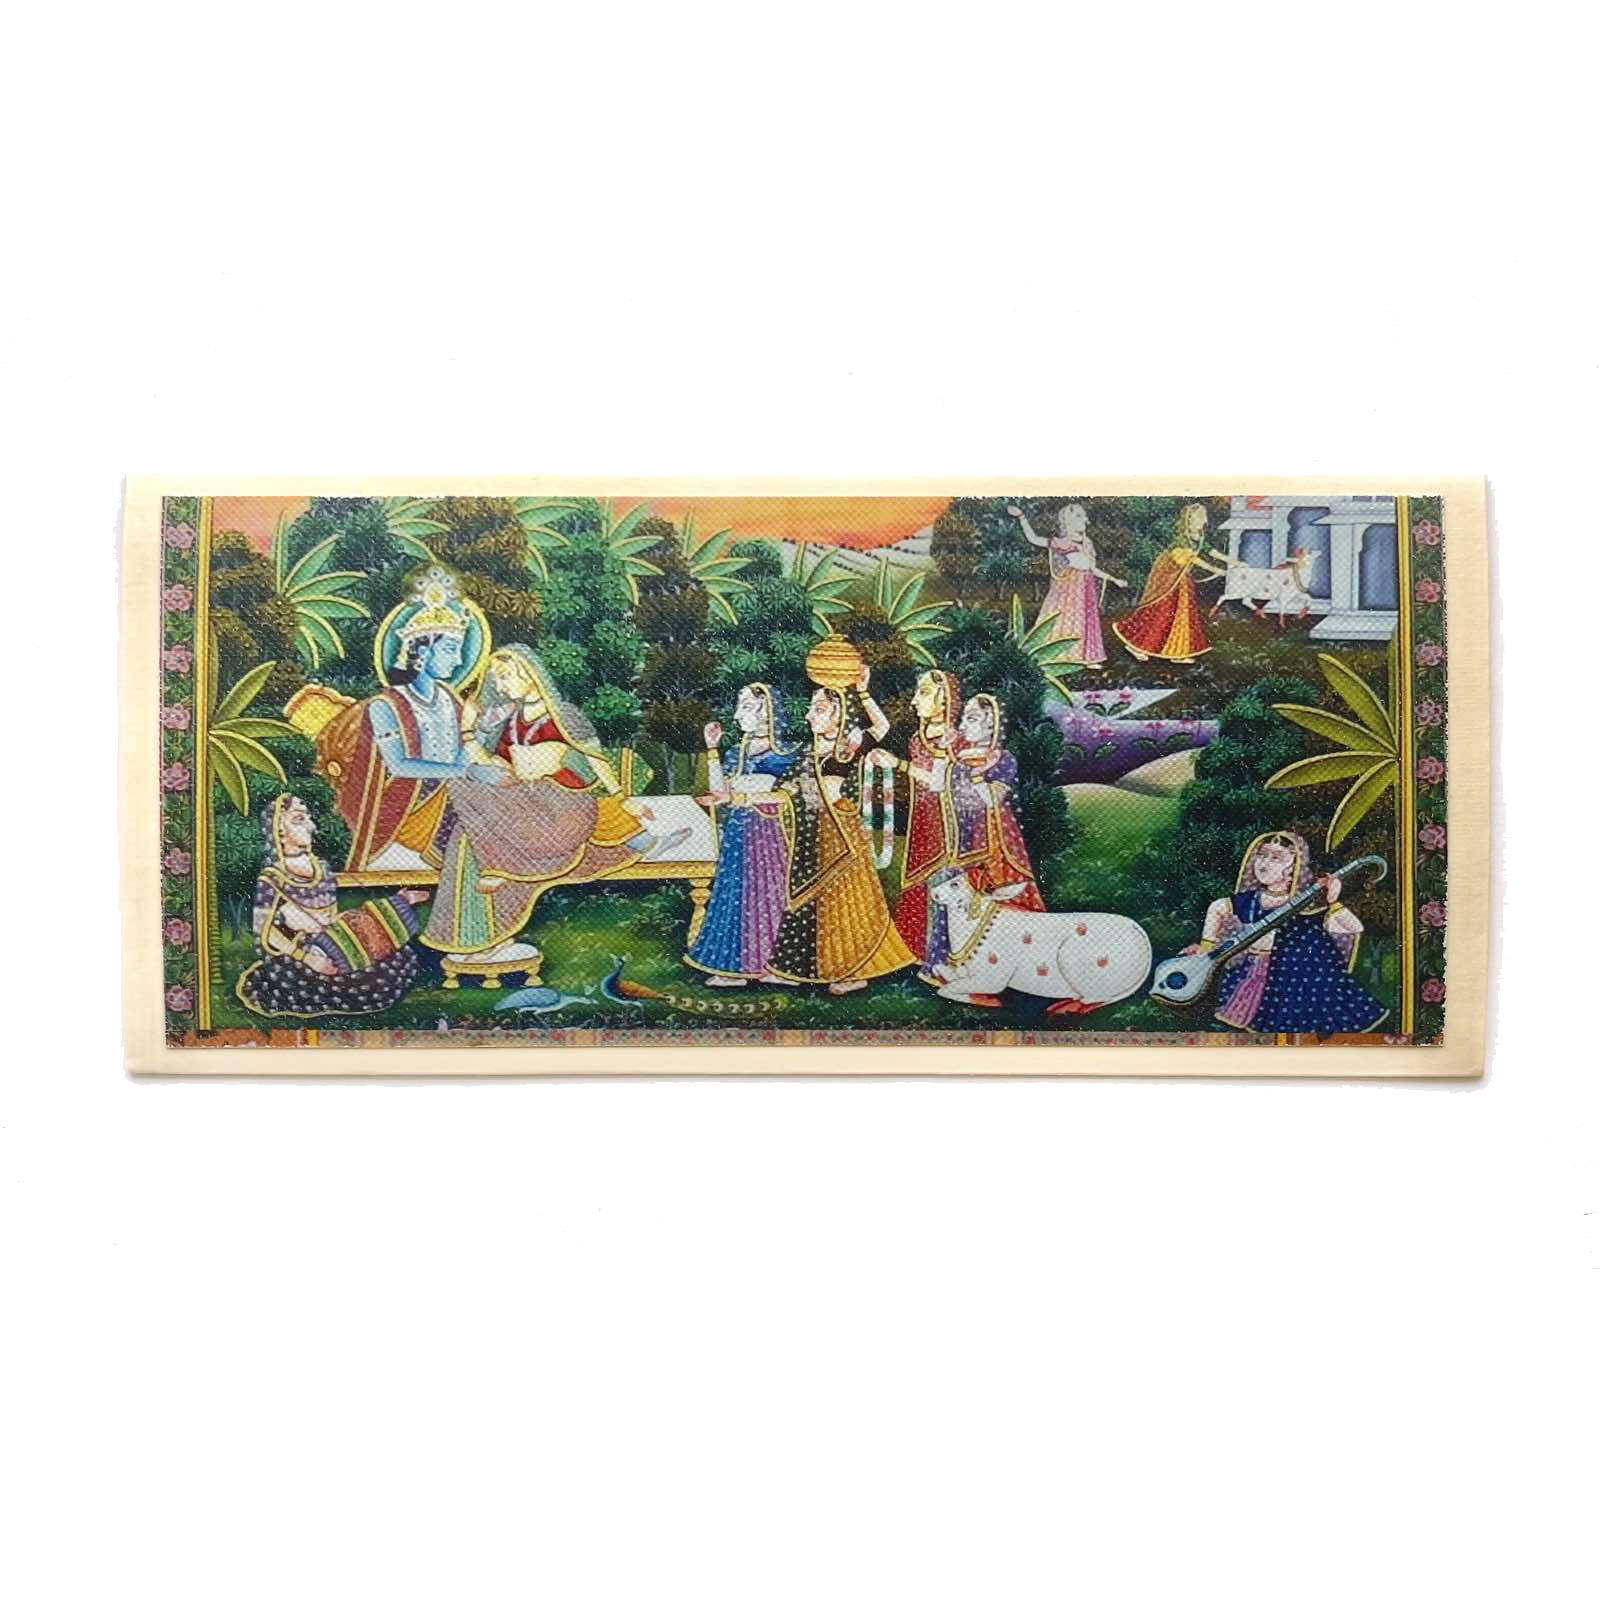 Подарочный индийский конверт КРИШНА И РАДХА НА ТОПЧАНЕ (размер 18,5 х 8,5 см.), 1 шт.